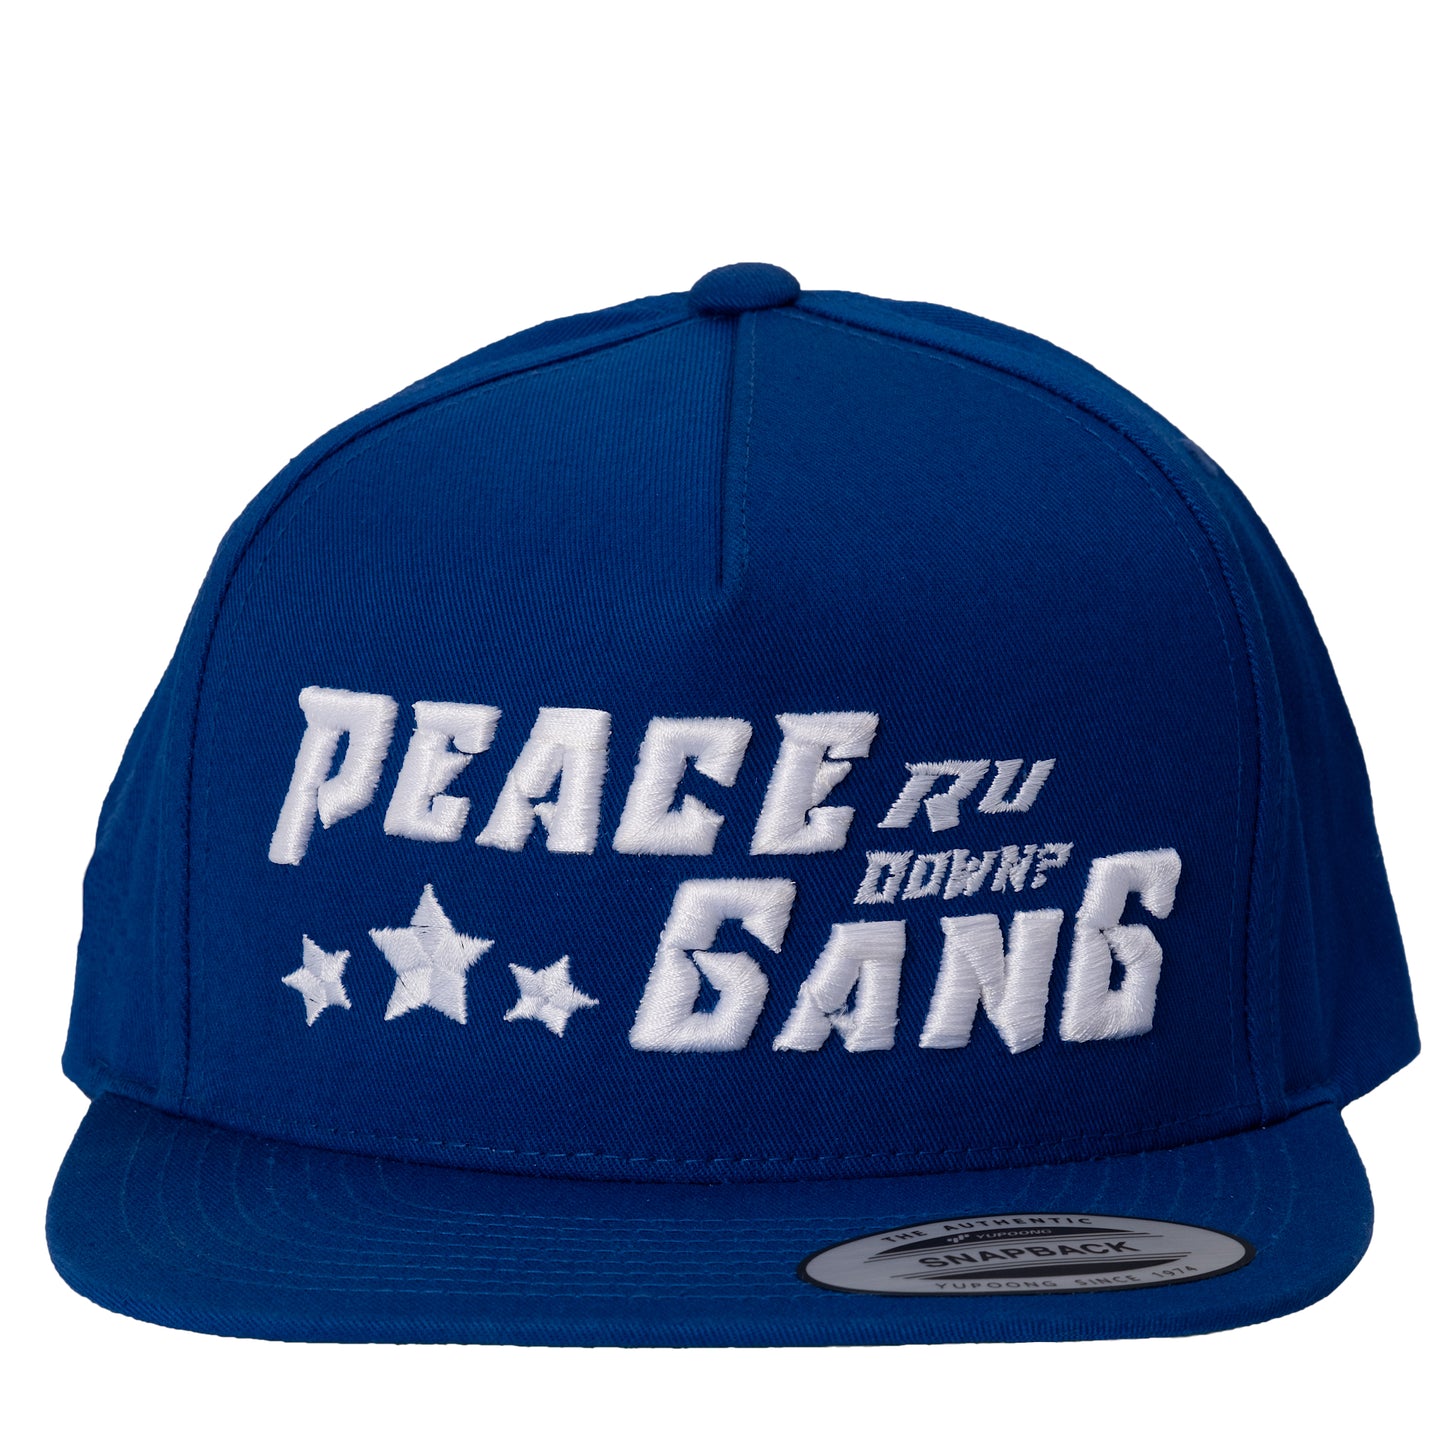 Blue Snap-Back Flat Bill Cap- PEACE GANG